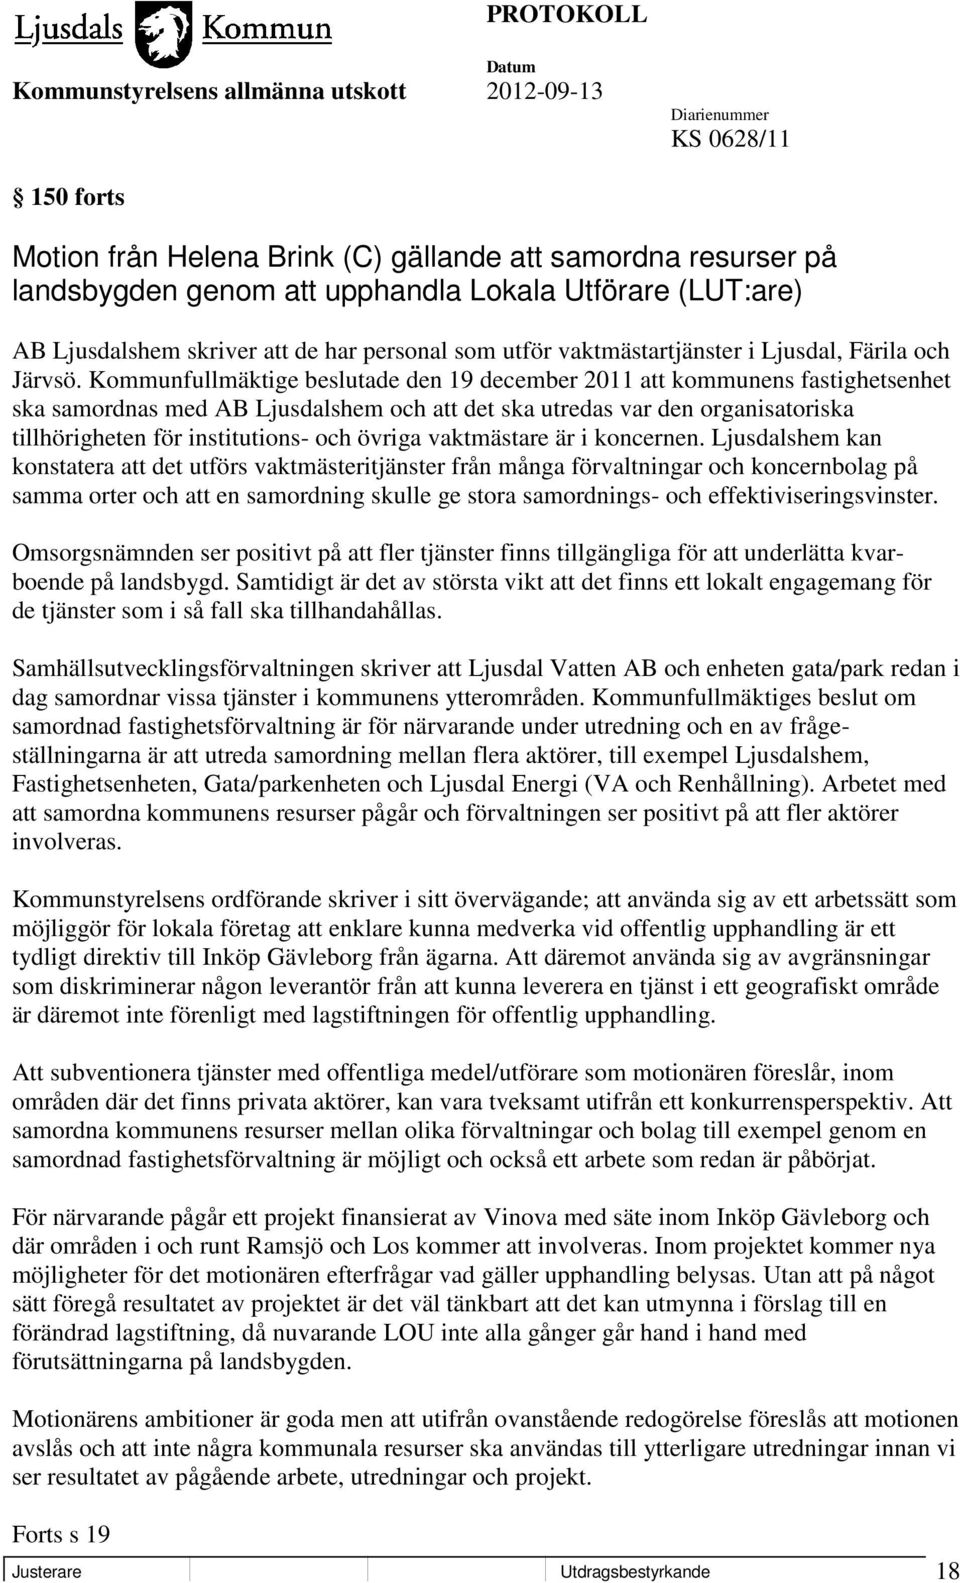 Kommunfullmäktige beslutade den 19 december 2011 att kommunens fastighetsenhet ska samordnas med AB Ljusdalshem och att det ska utredas var den organisatoriska tillhörigheten för institutions- och